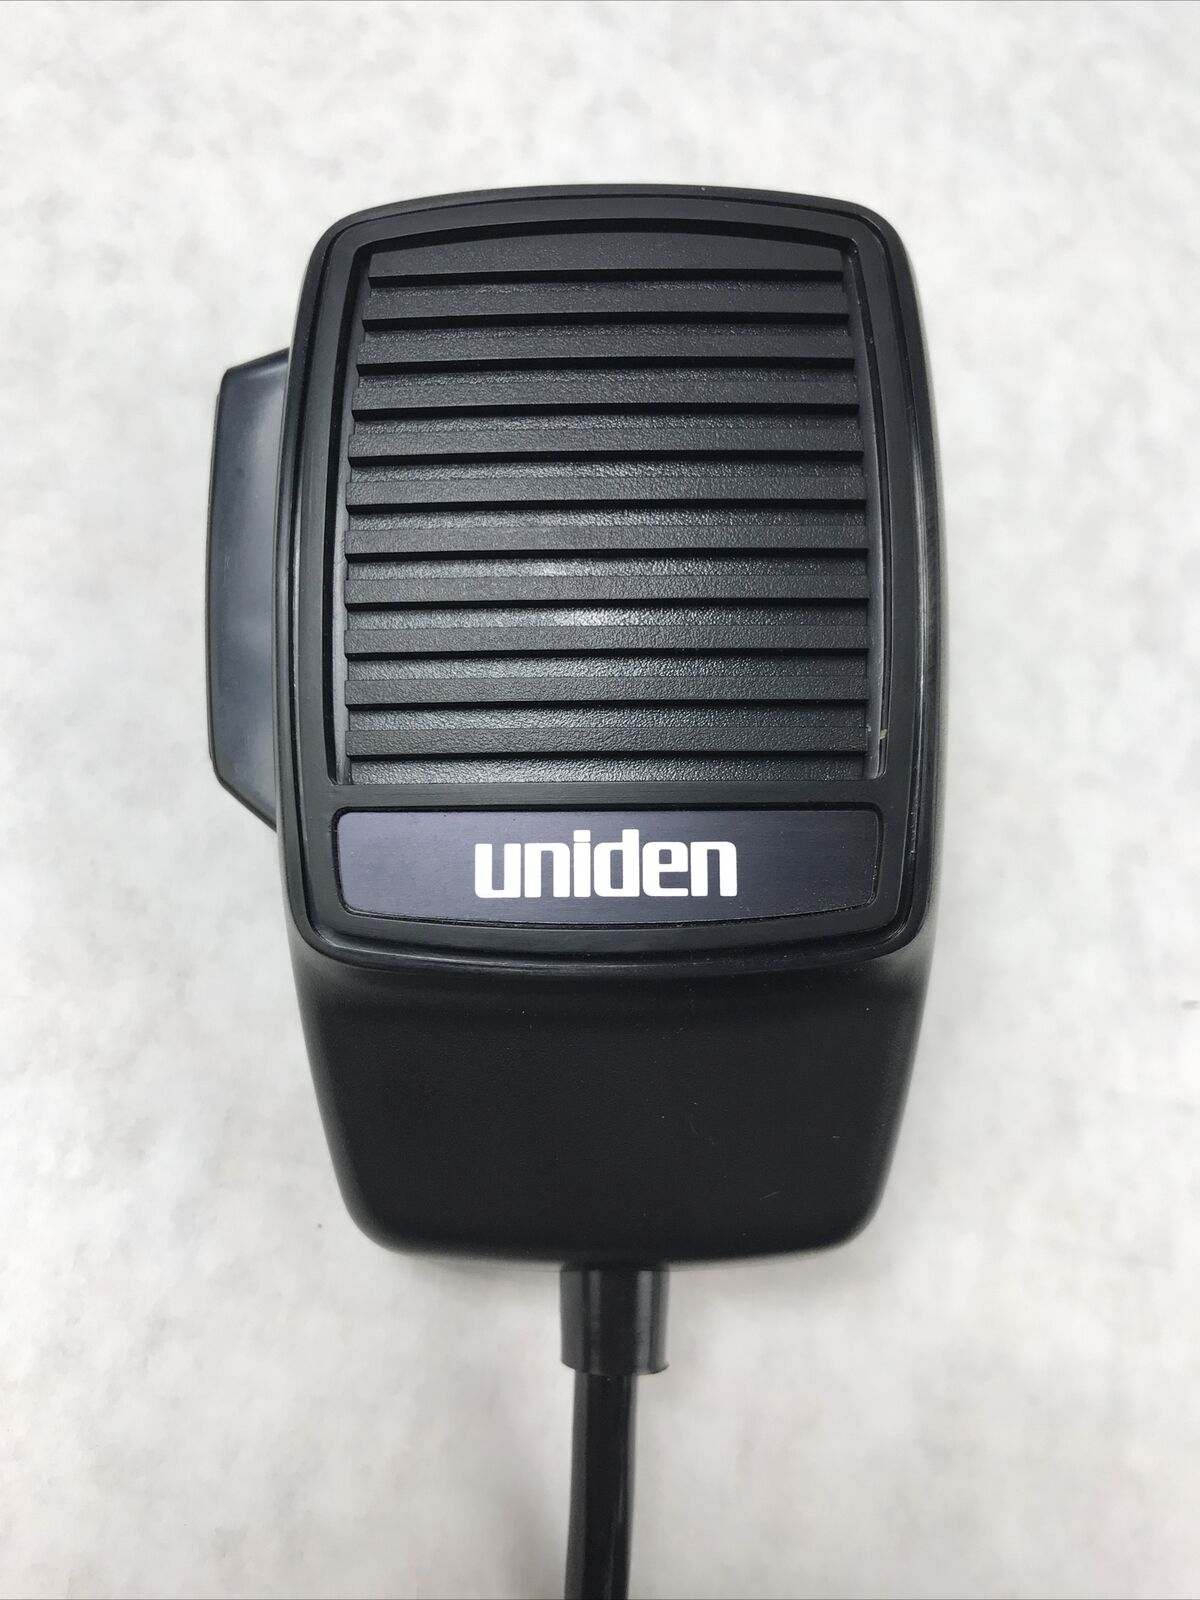 Uniden CB Radio Handheld Electret Condenser Microphone